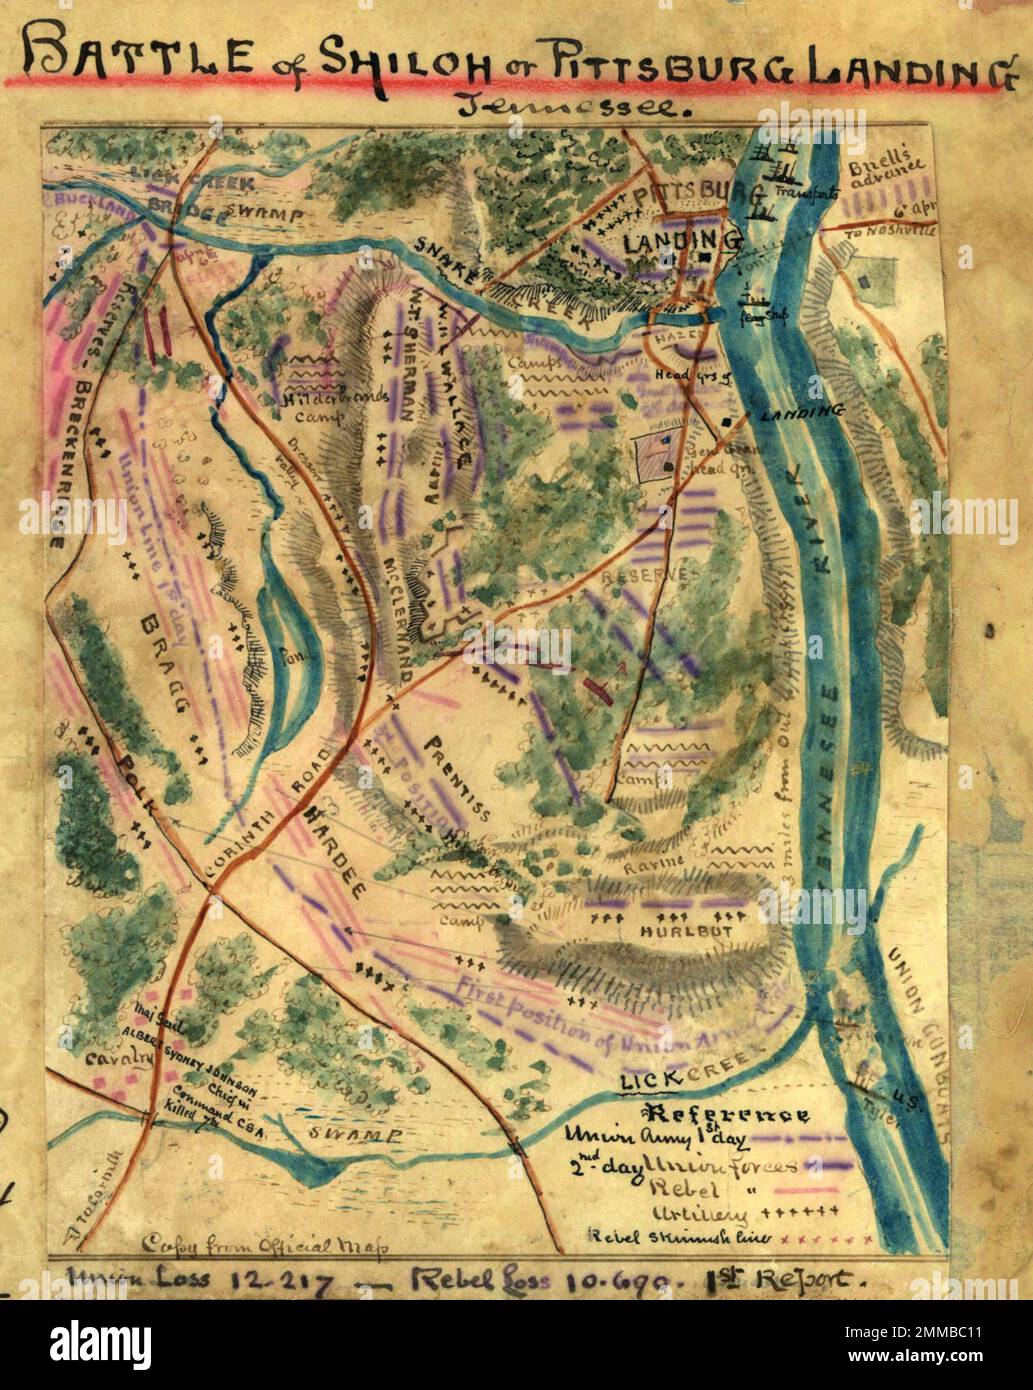 La battaglia di Shiloh (o Battaglia di Pittsburg Landing) fu combattuta il 6-7 aprile 1862 nella guerra civile americana. Due eserciti dell'Unione si combinarono per sconfiggere l'esercito confederato del Mississippi. Grant era il comandante dell'Unione, mentre il generale Albert Sidney Johnston, morto per perdita di sangue dopo una ferita alla gamba durante la battaglia, era il comandante confederato. Questa immagine mostra una mappa contemporanea della battaglia. Foto Stock